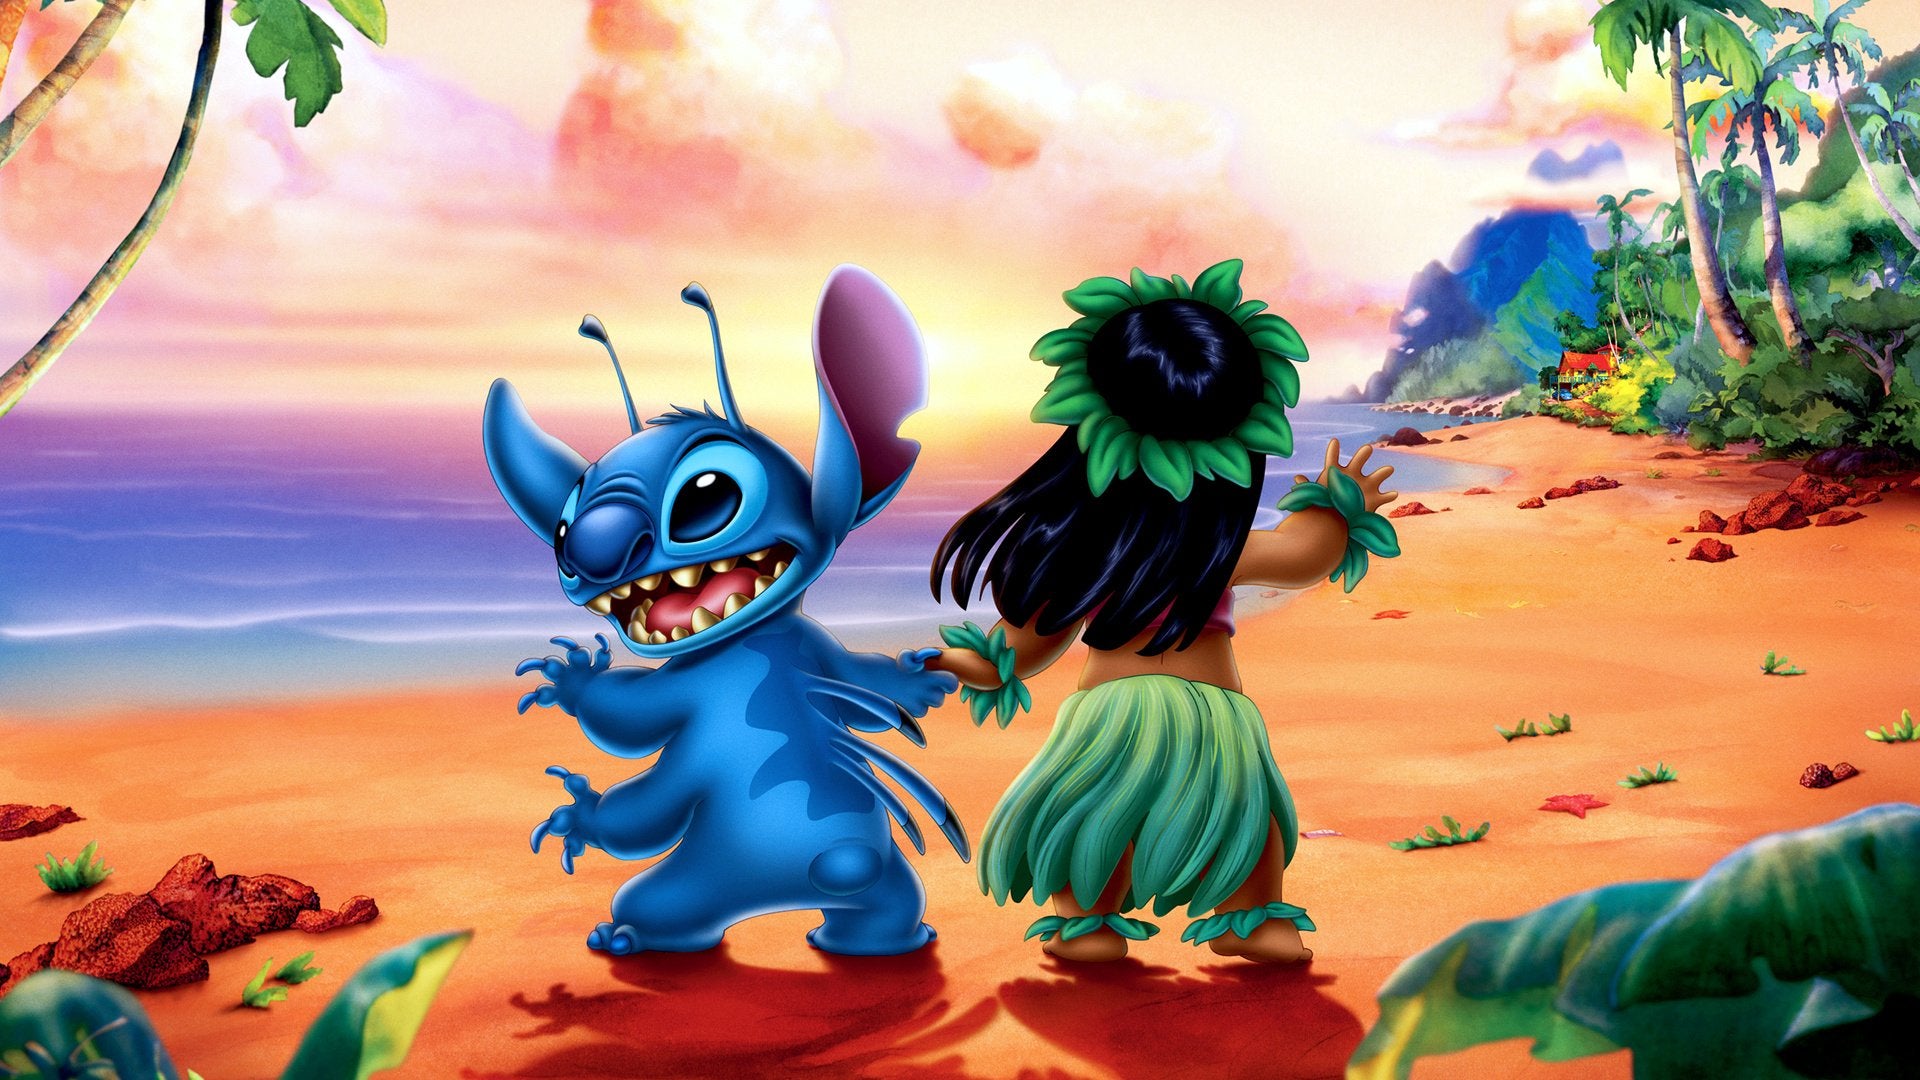 Disney's Lilo & Stitch 1 + 2 Stitch Has a Glitch